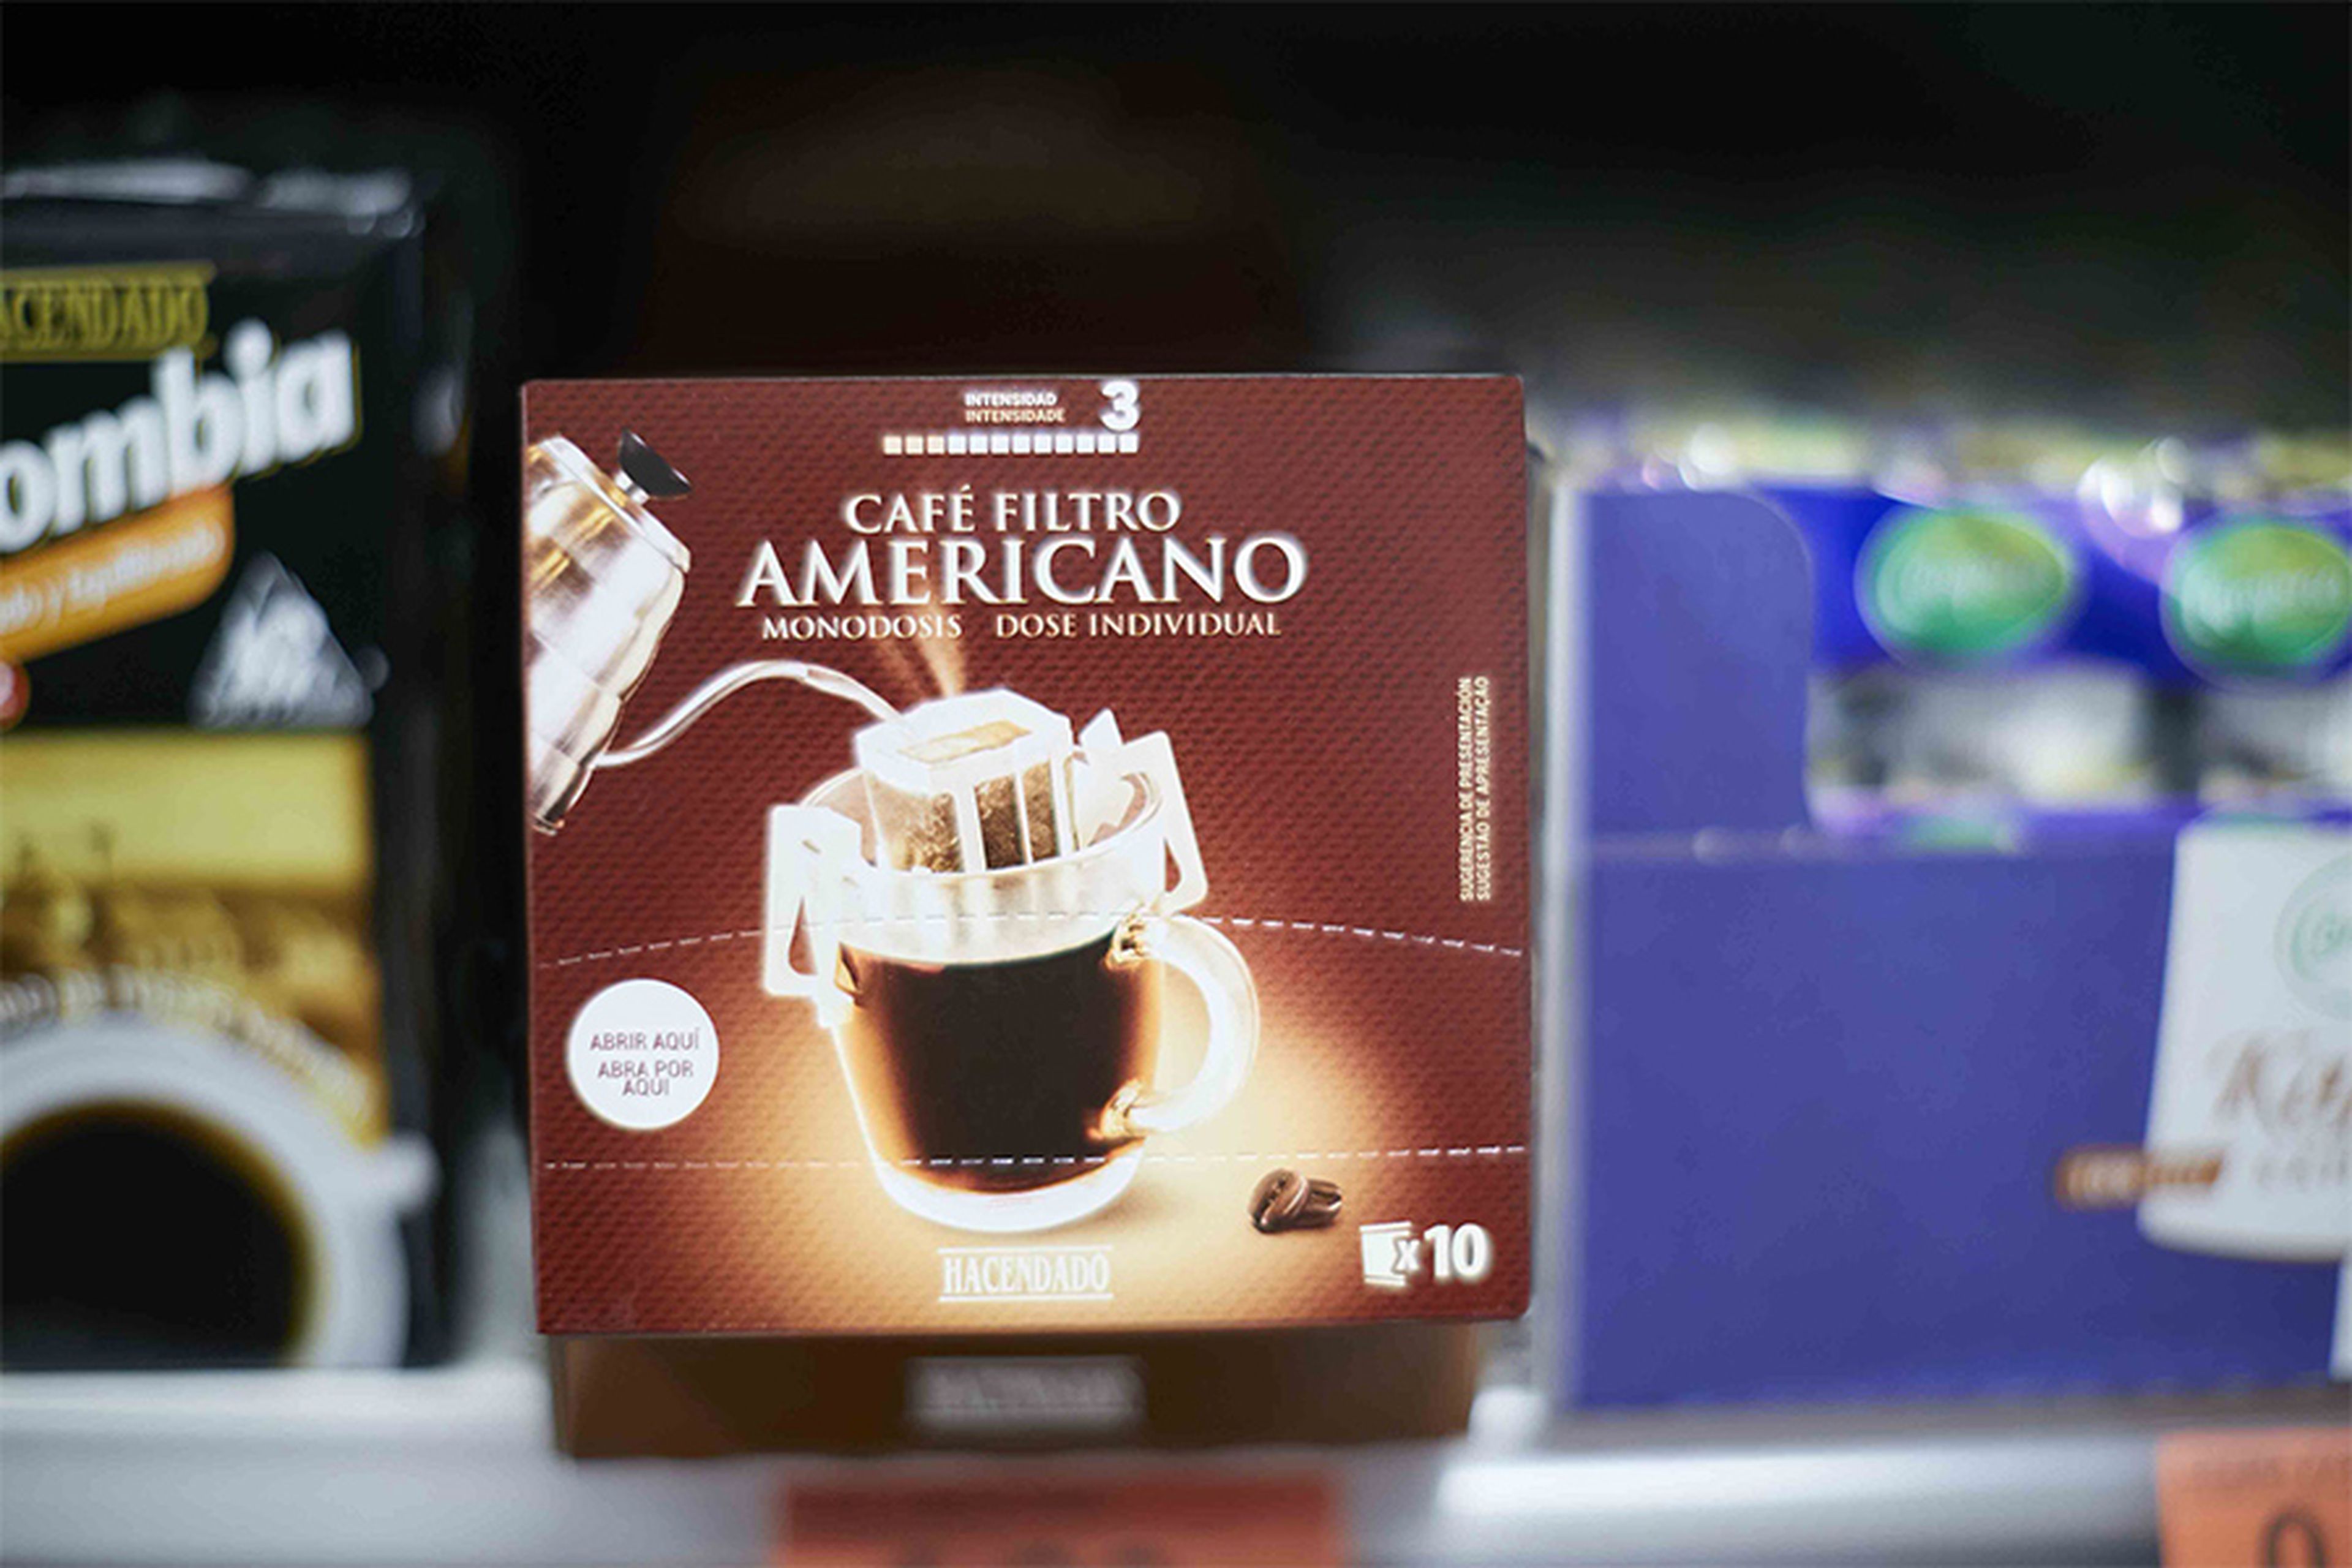 El café filtro americano de Mercadona, premiado como uno de los productos más innovadores